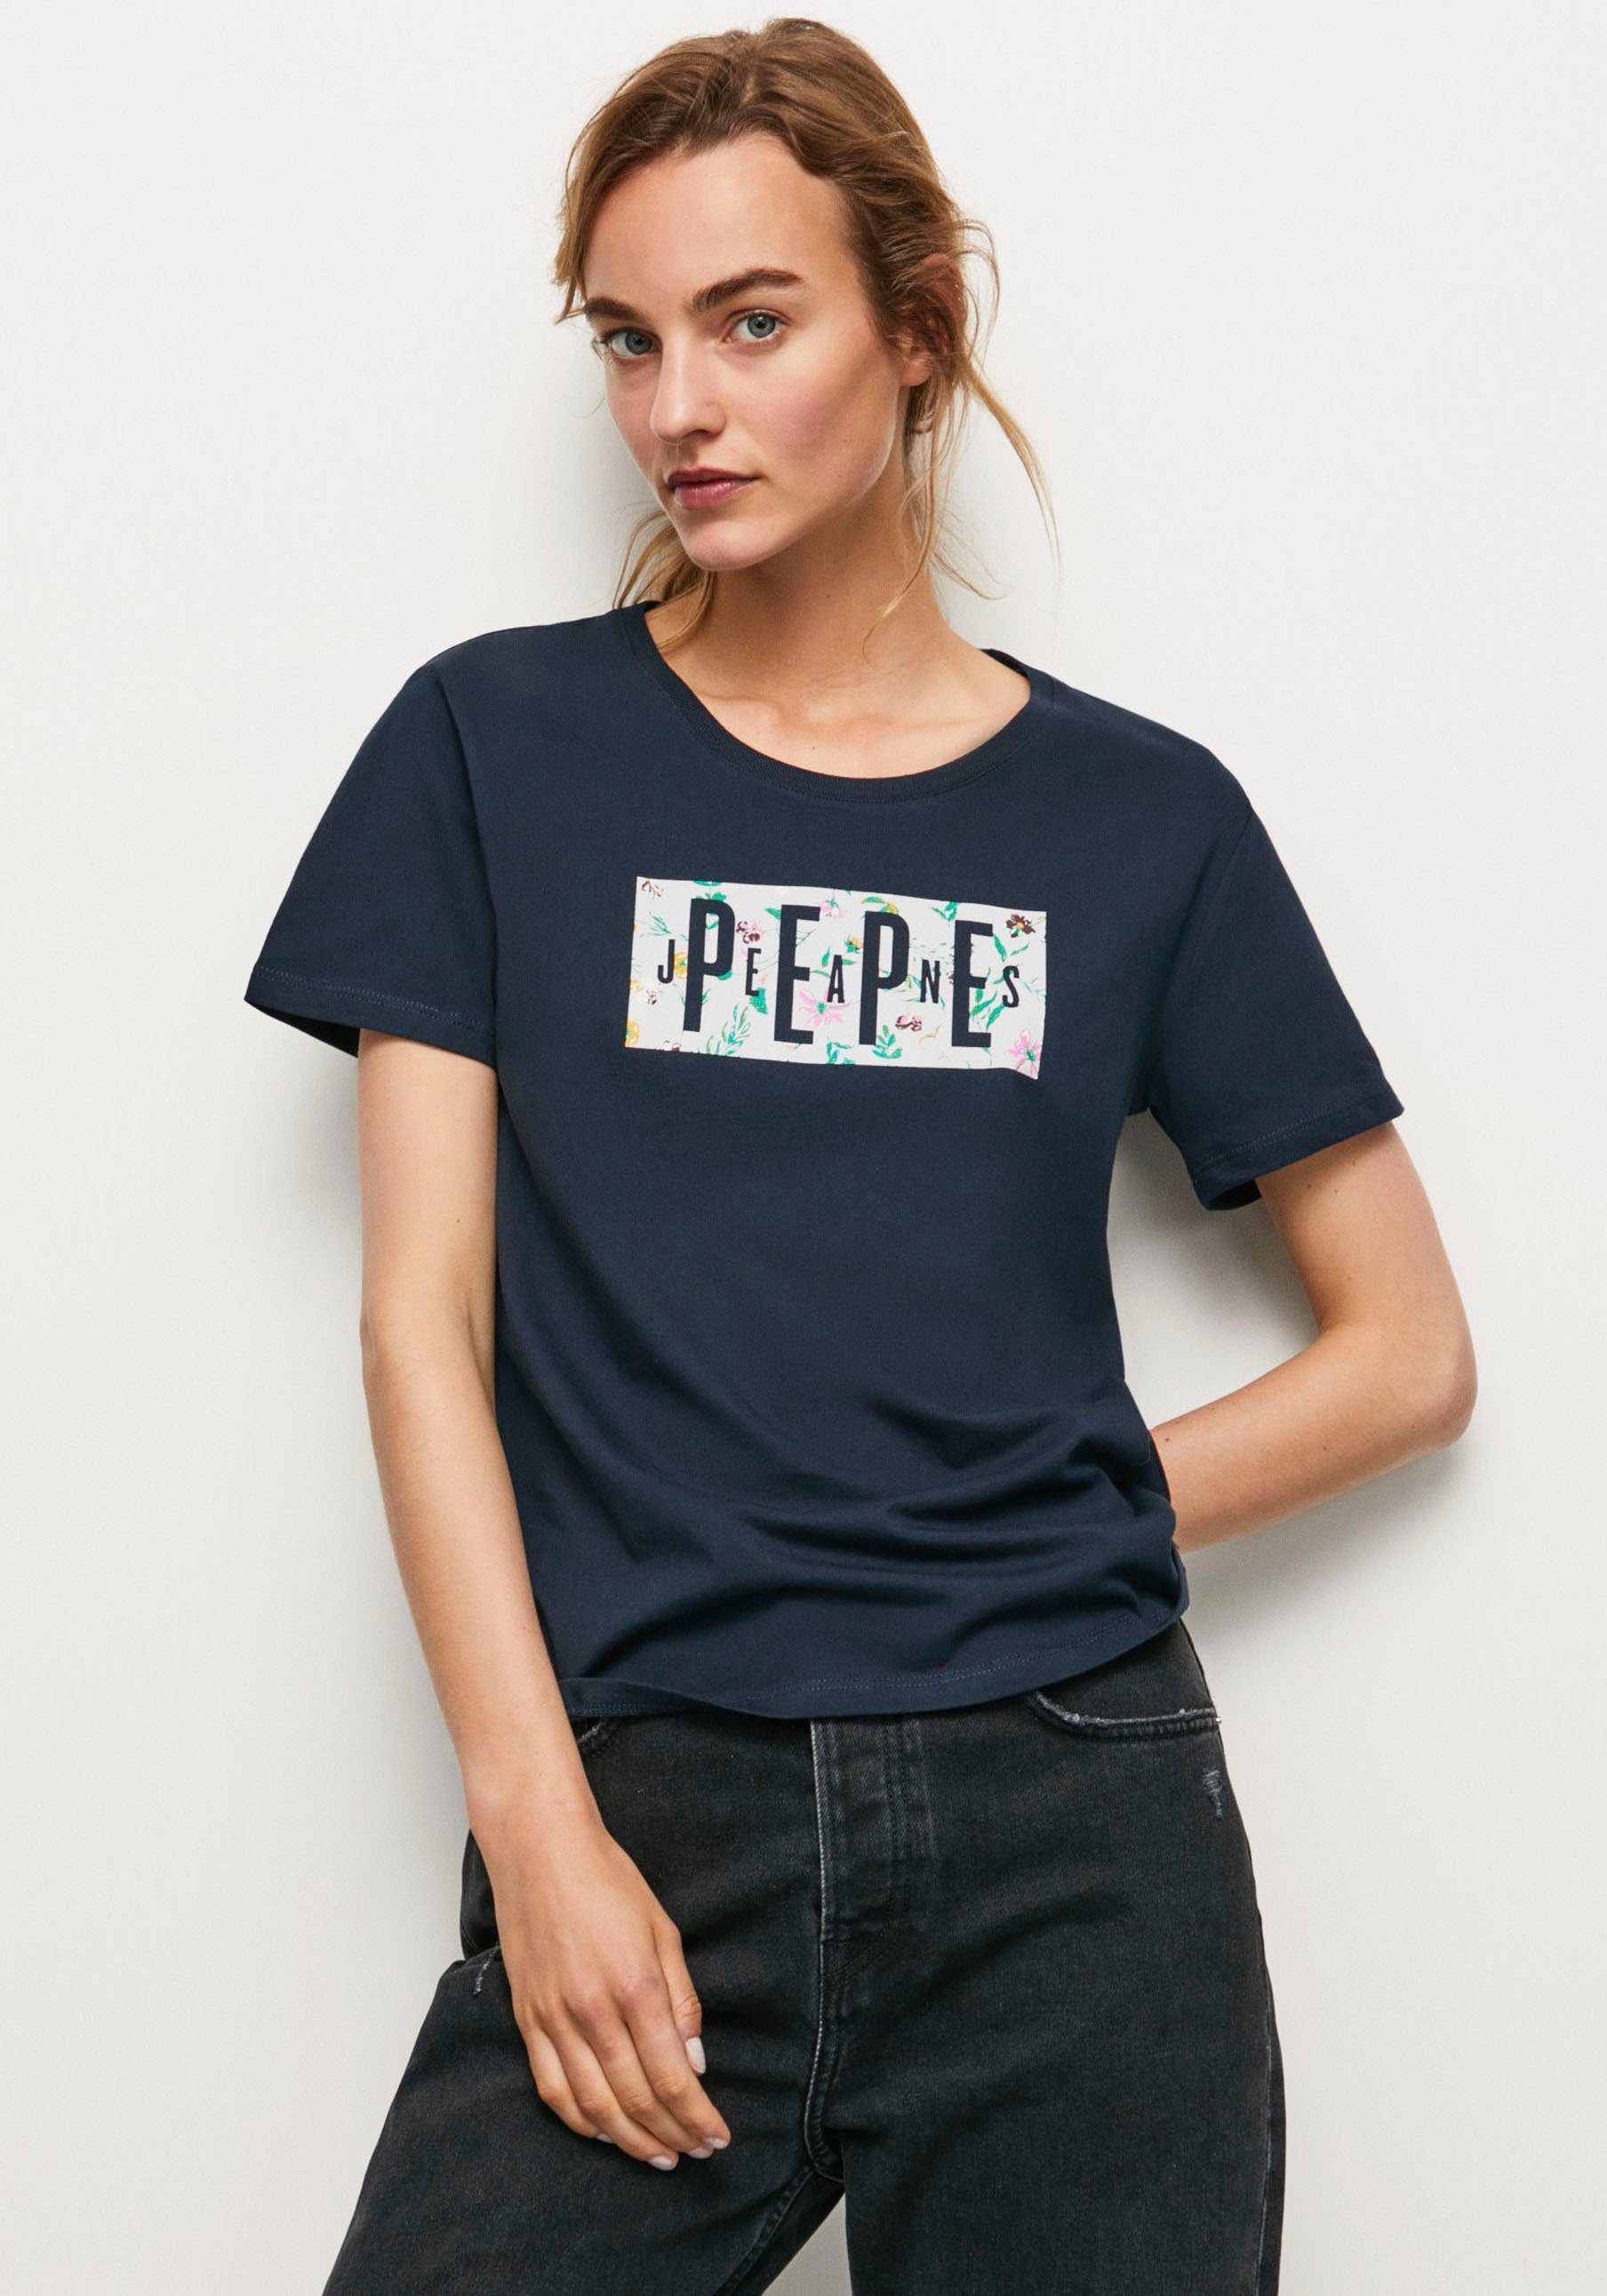 Freeman T. Porter Damen T-Shirts online kaufen | OTTO